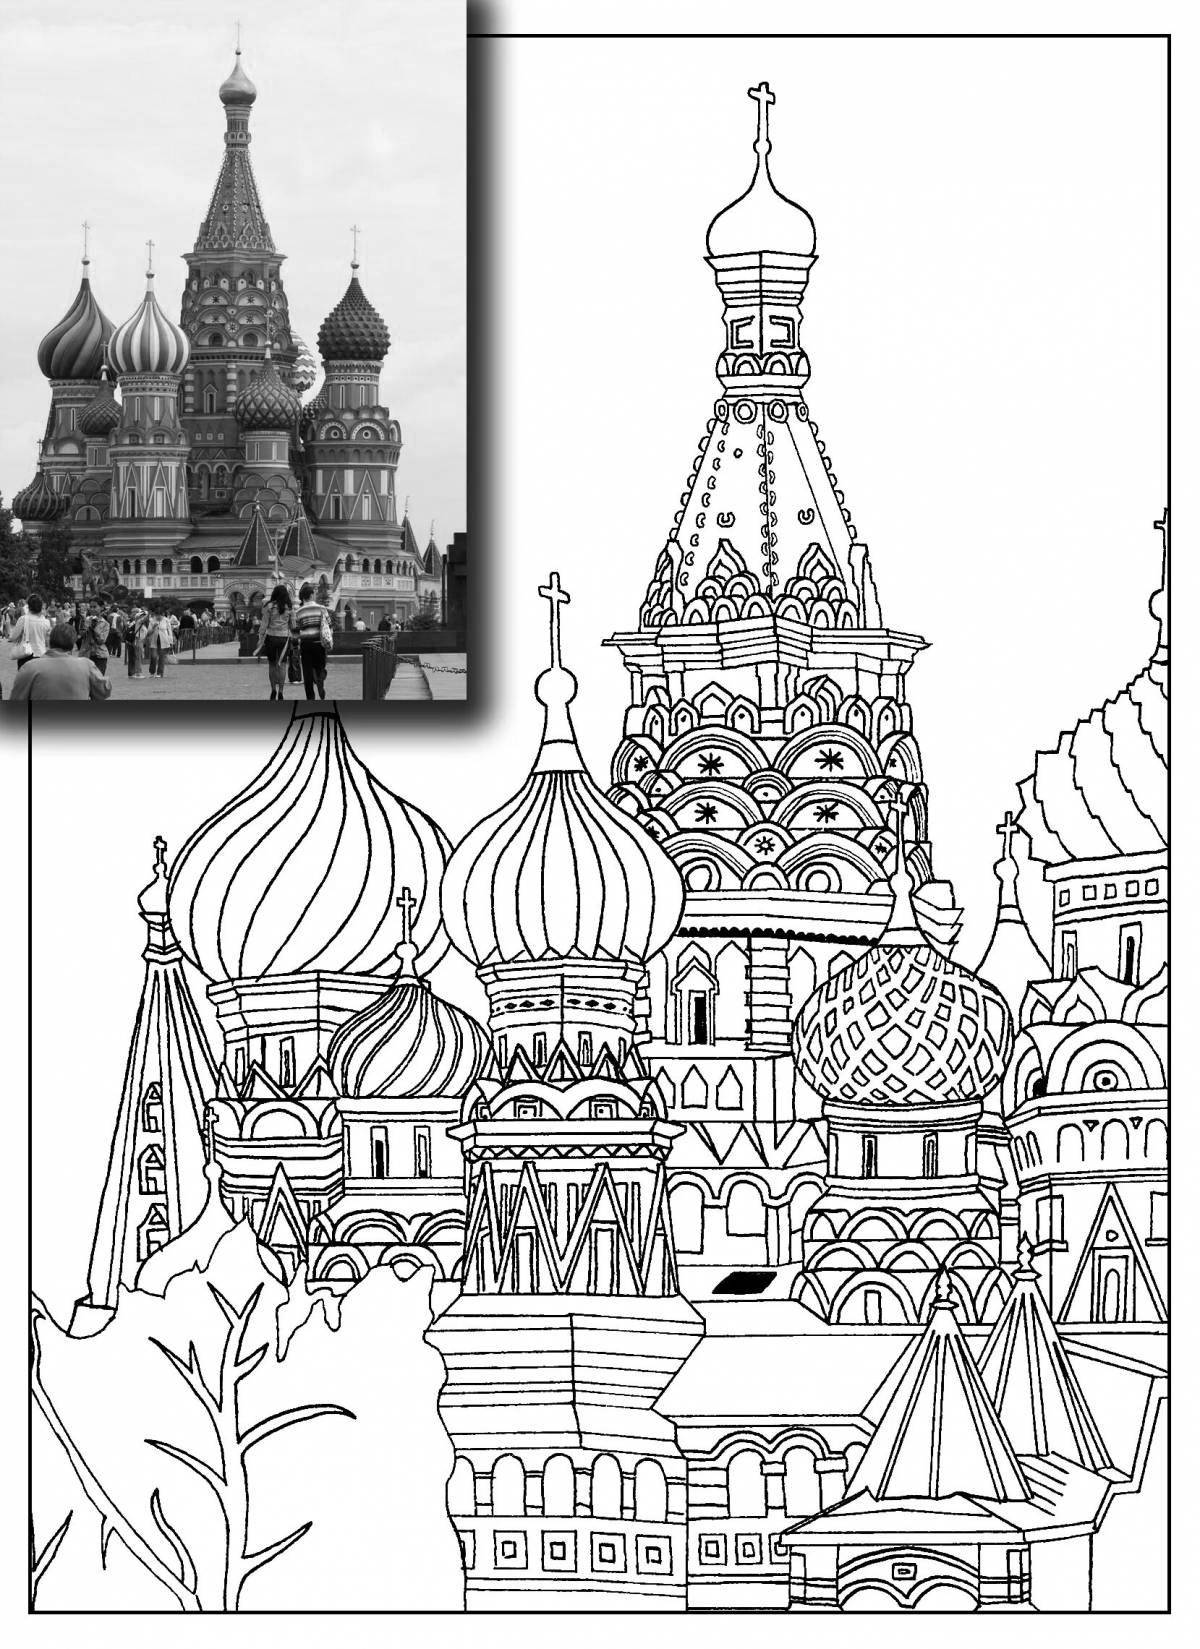 Bright Kremlin drawing coloring page